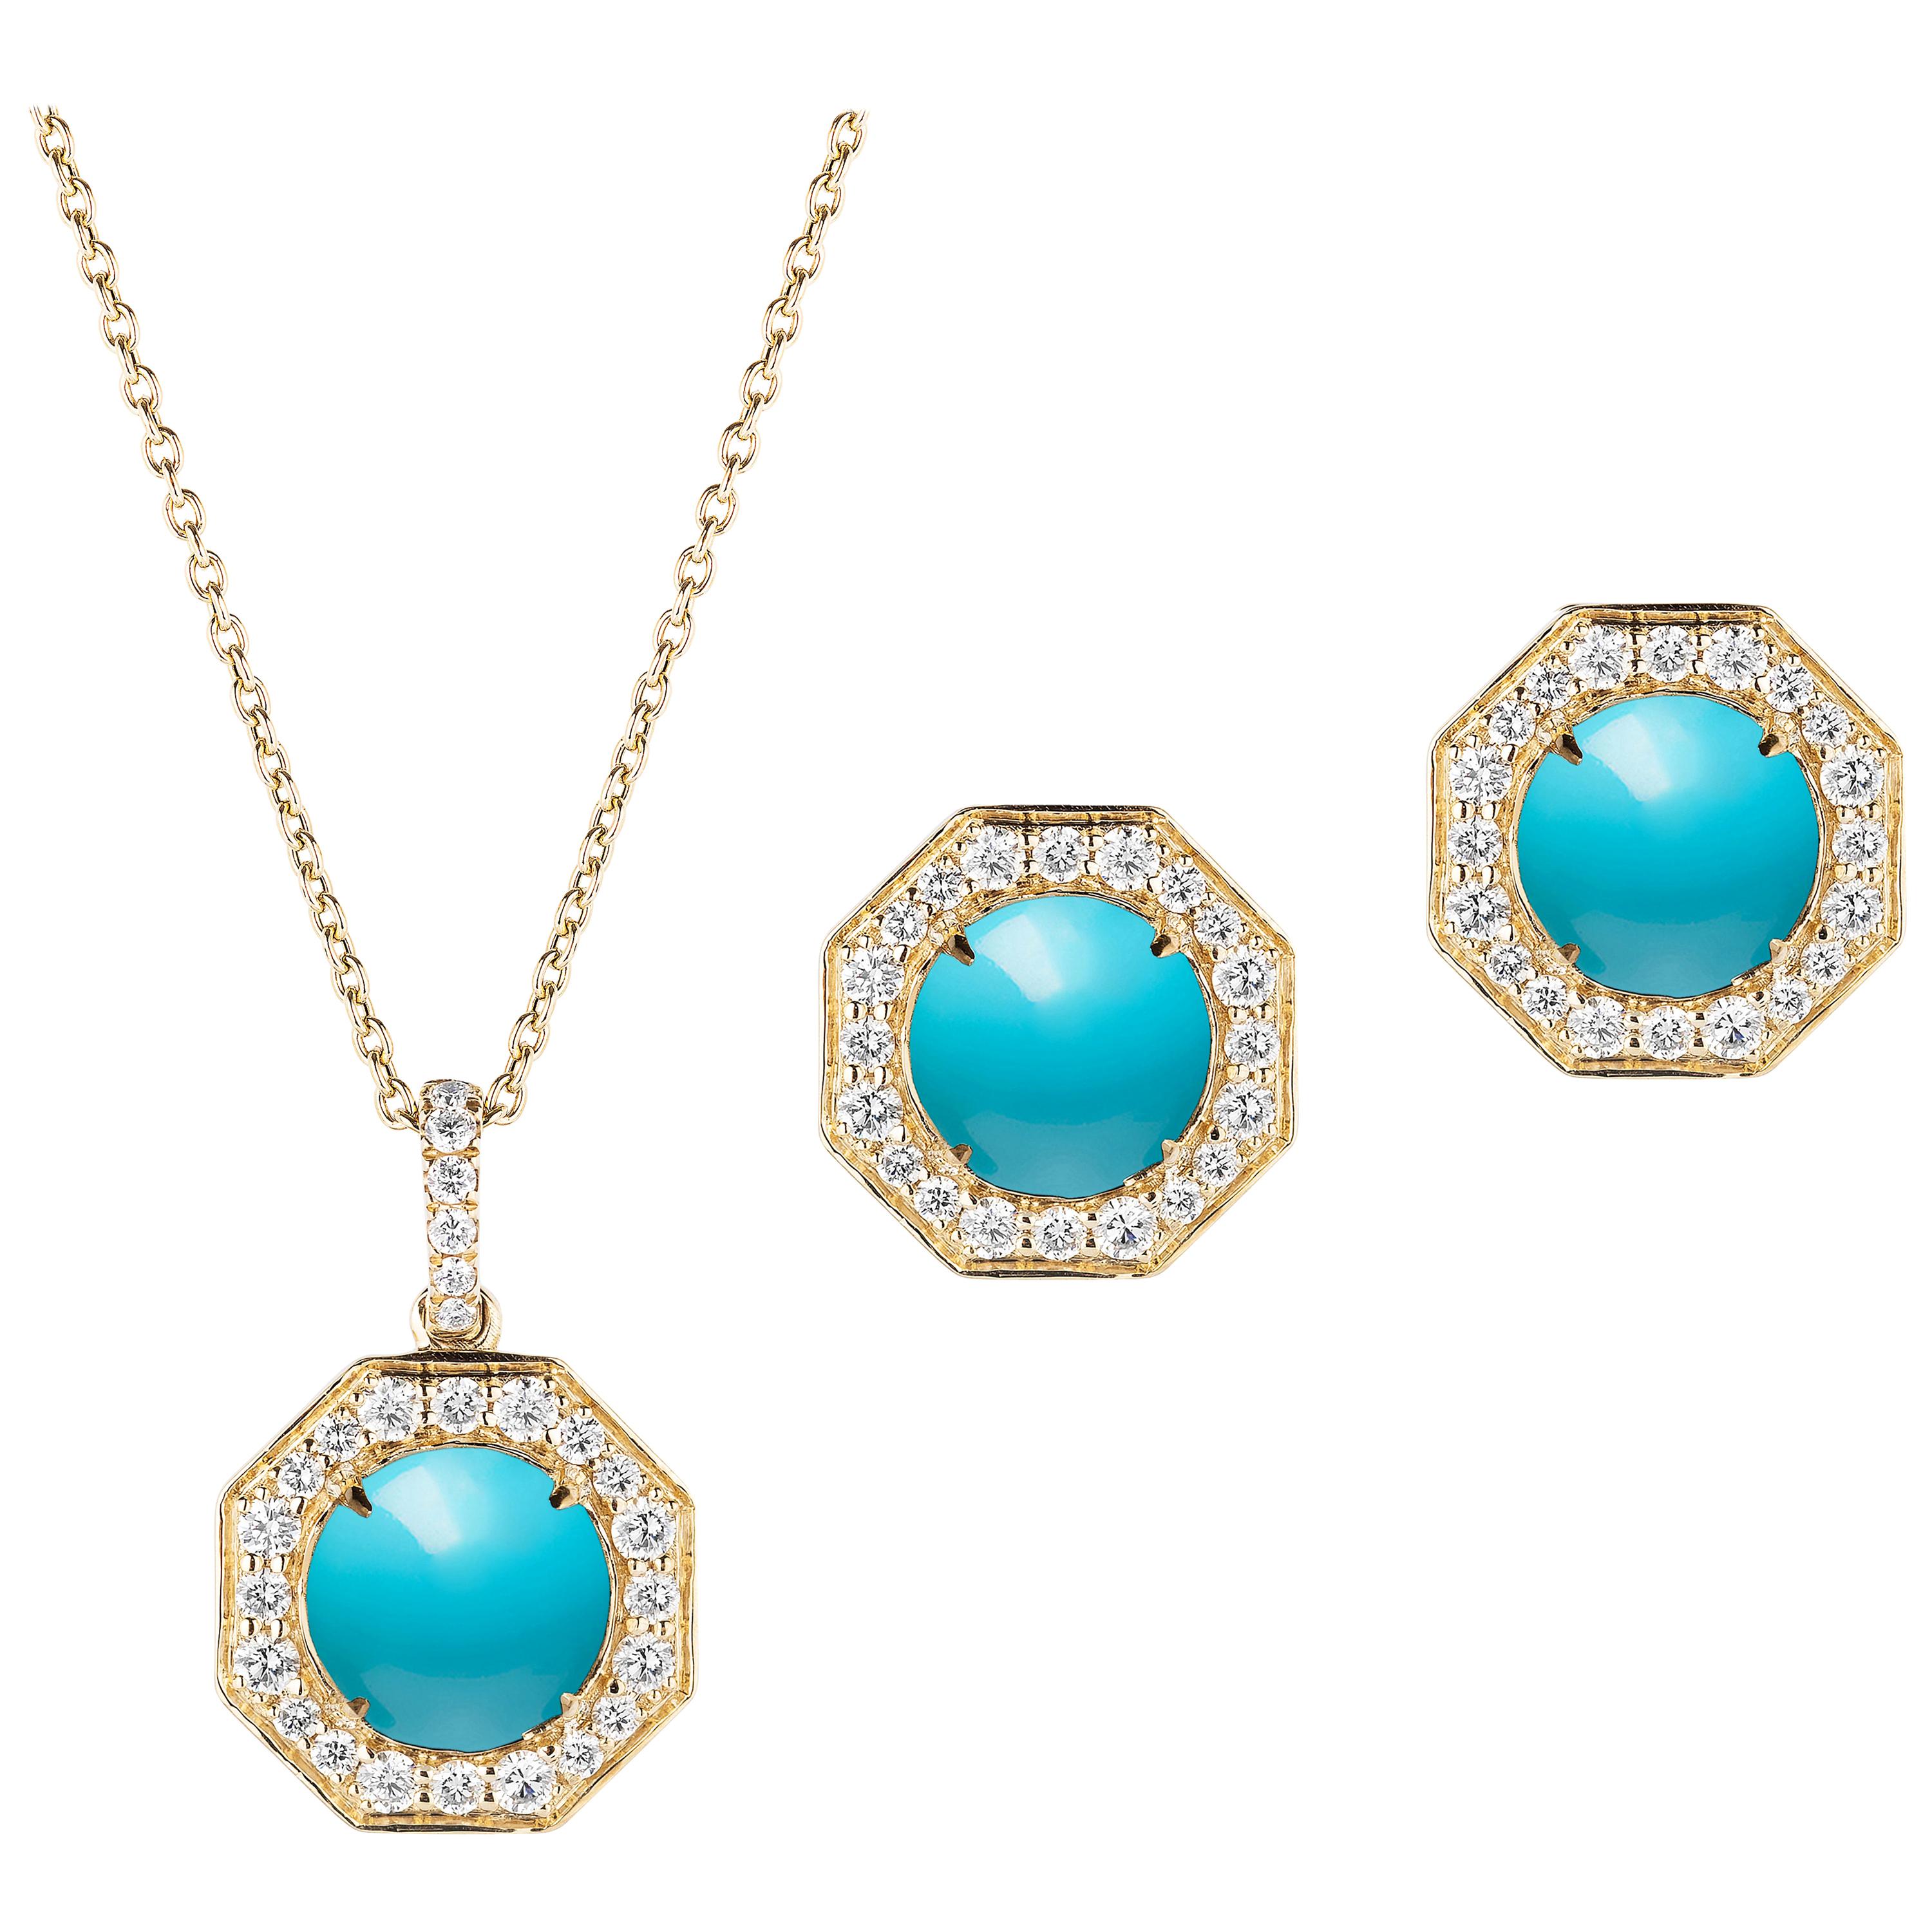 Goshwara Turquoise With Diamonds Earrings & Pendant